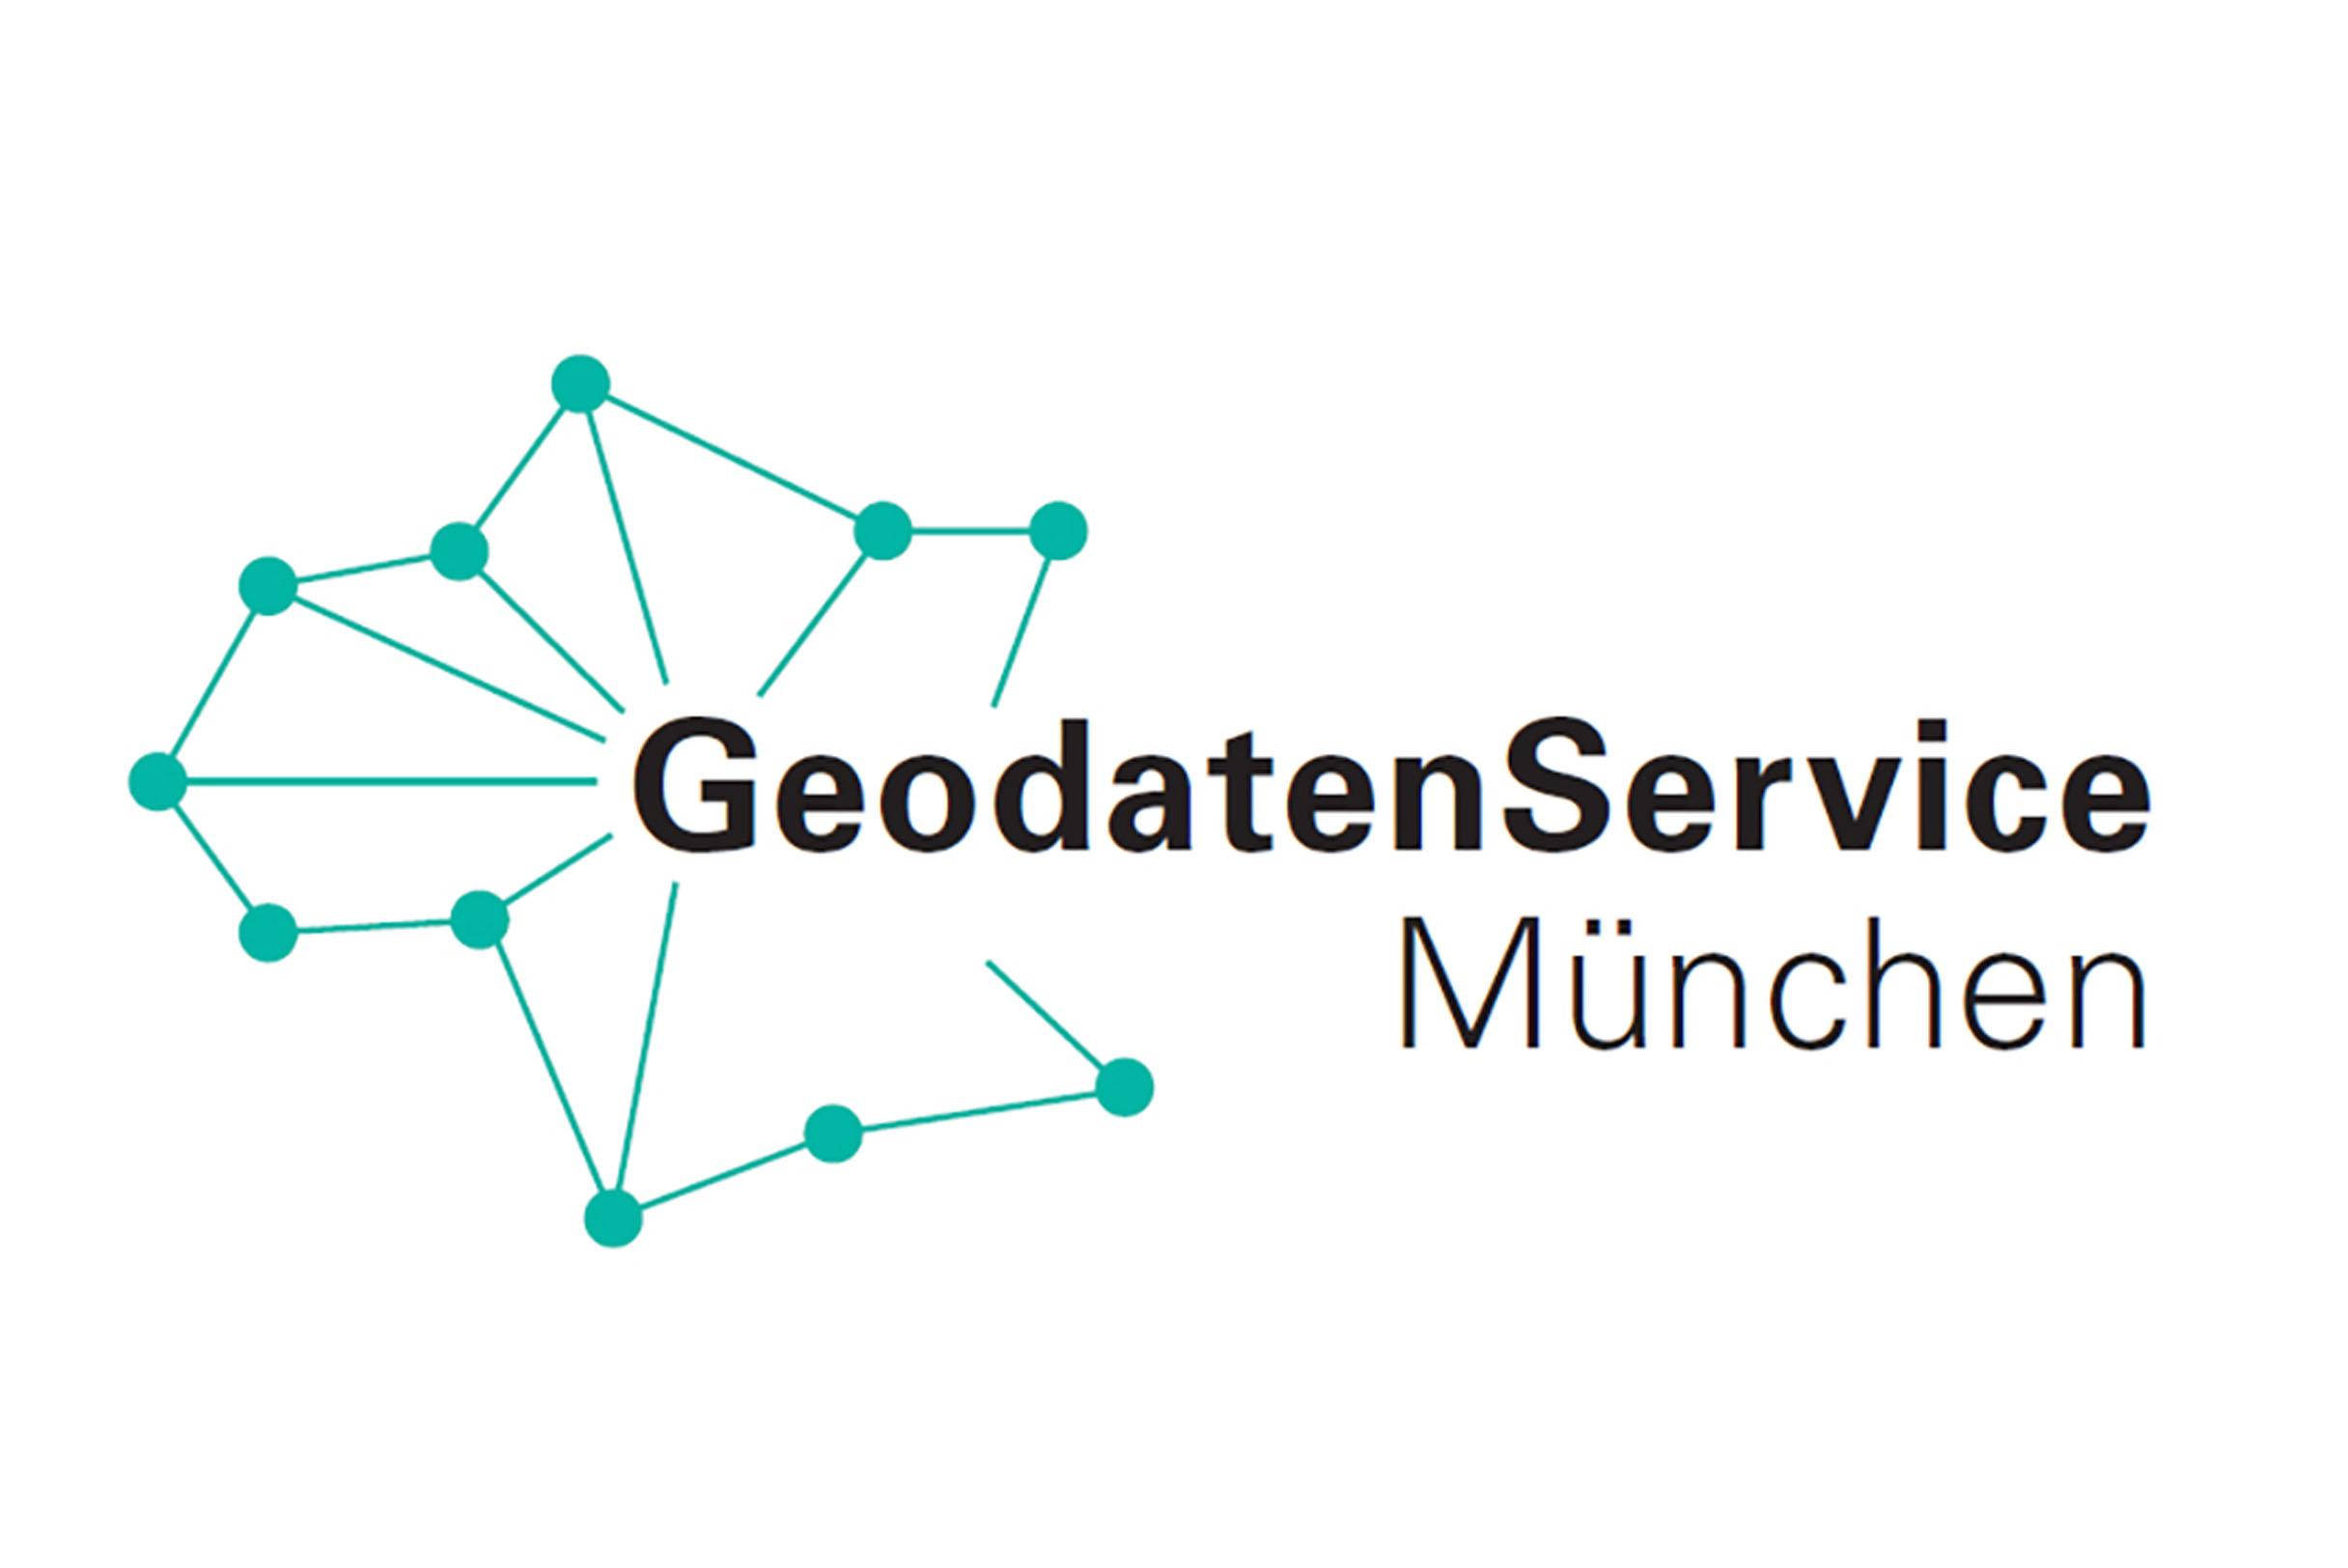 Bildmarke mit grünem Koordinatensystem und Schriftzug "GeodatenService München"